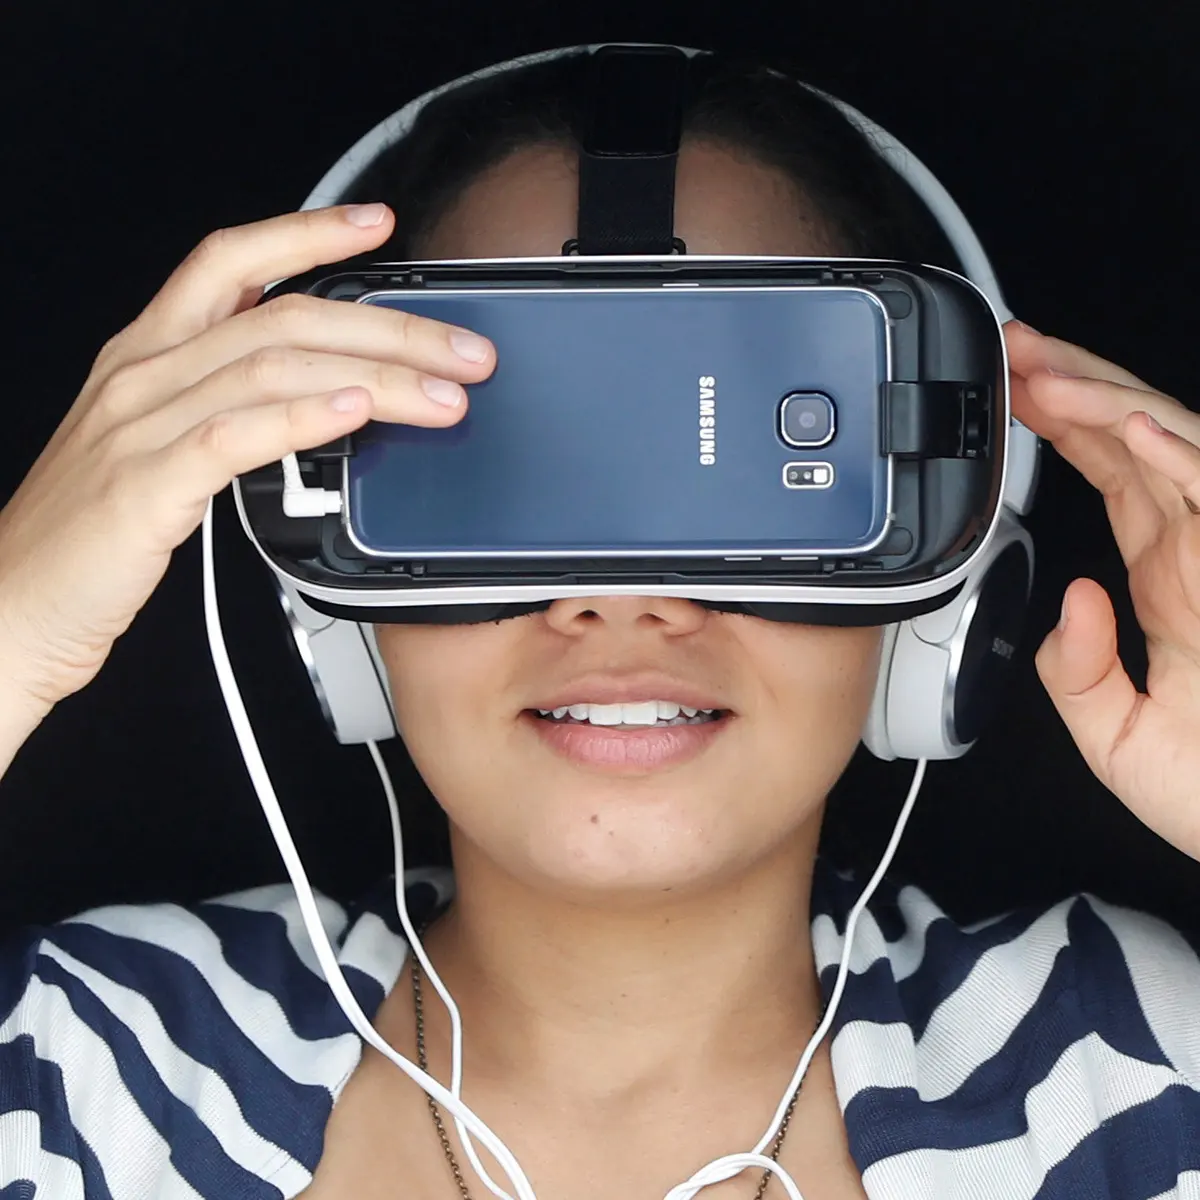 图片展示一位戴着头戴式耳机和虚拟现实（VR）眼镜的女士，她似乎正在体验沉浸式的虚拟现实内容。